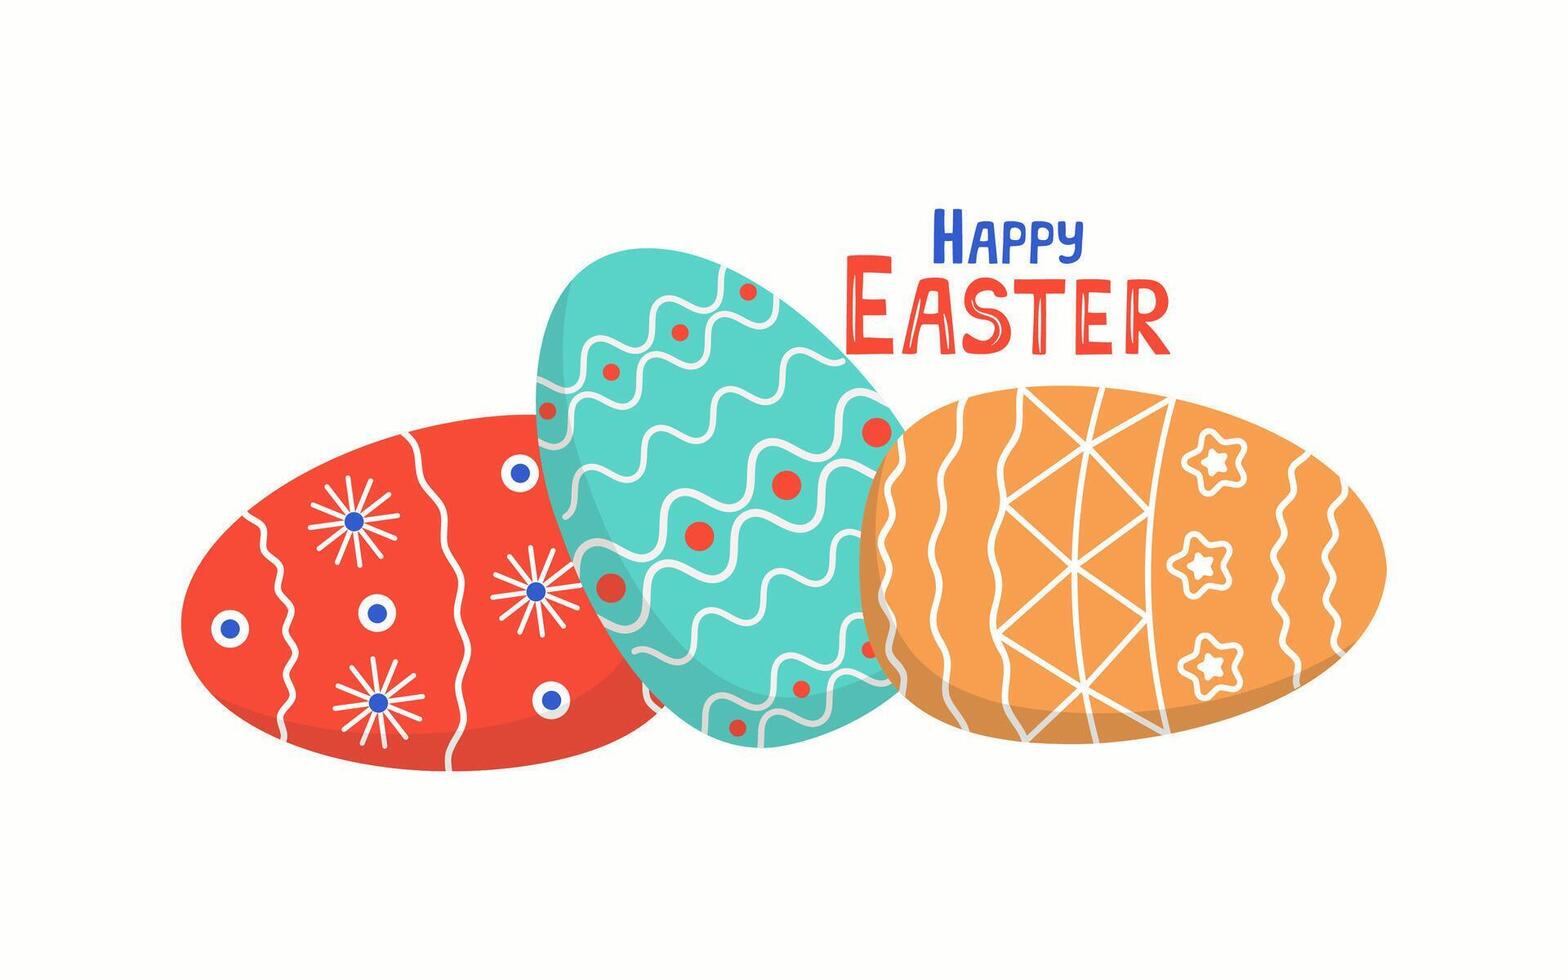 påsk uppsättning av målad påsk ägg. baner, vykort med de festlig inskrift Lycklig påsk. vektor sömlös bakgrund.